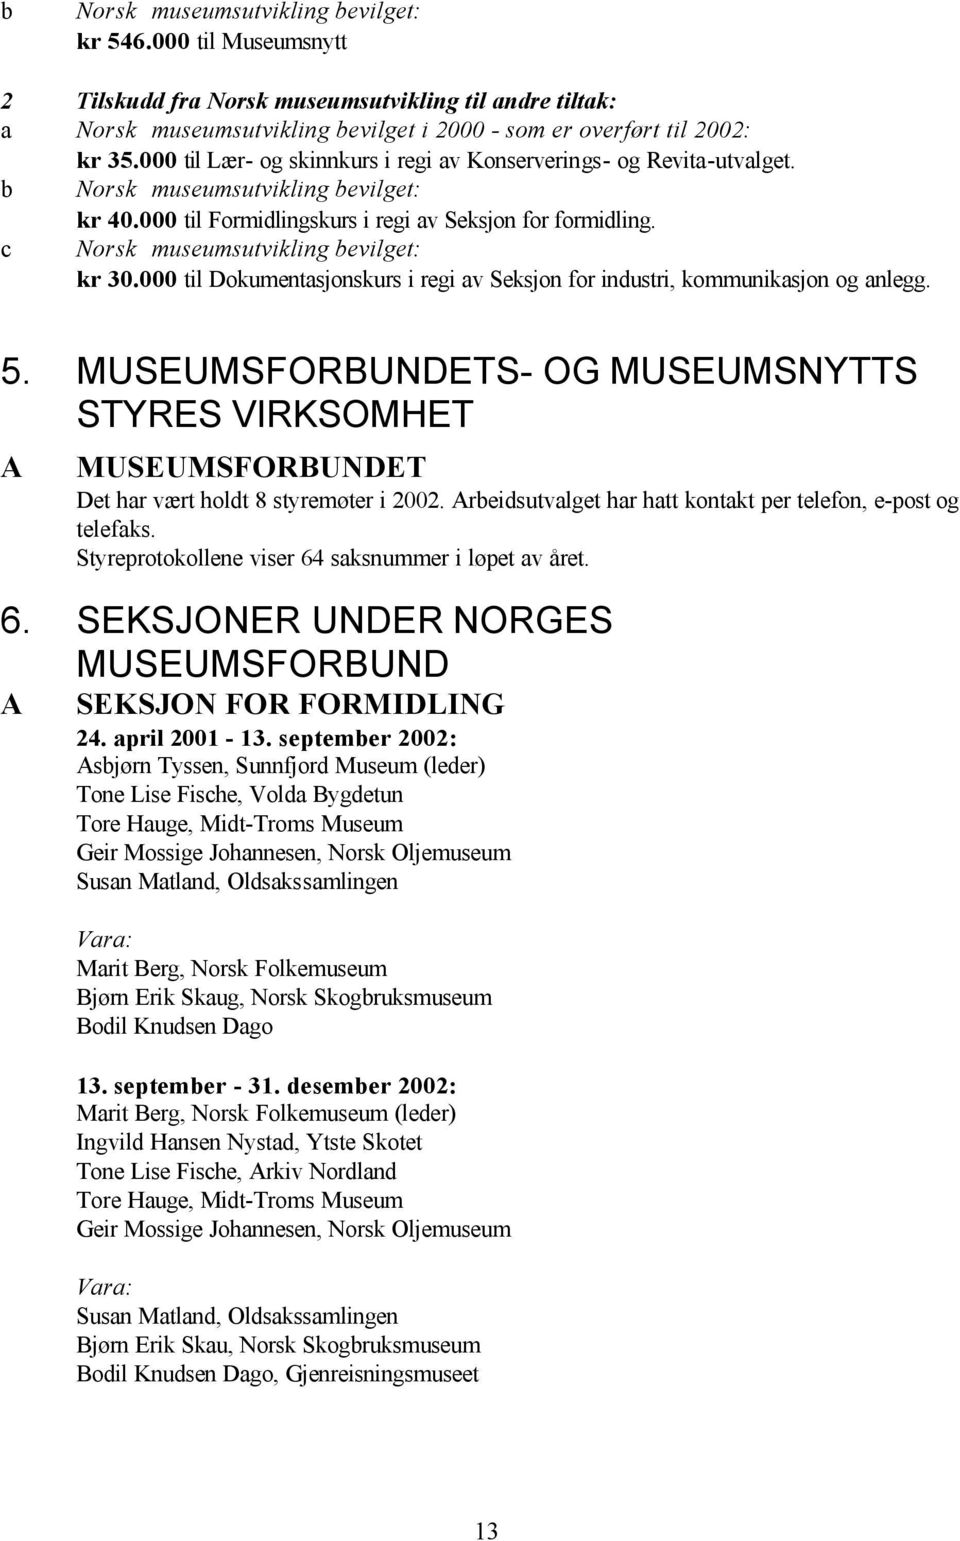 c Norsk museumsutvikling bevilget: kr 30.000 til Dokumentasjonskurs i regi av Seksjon for industri, kommunikasjon og anlegg. 5.